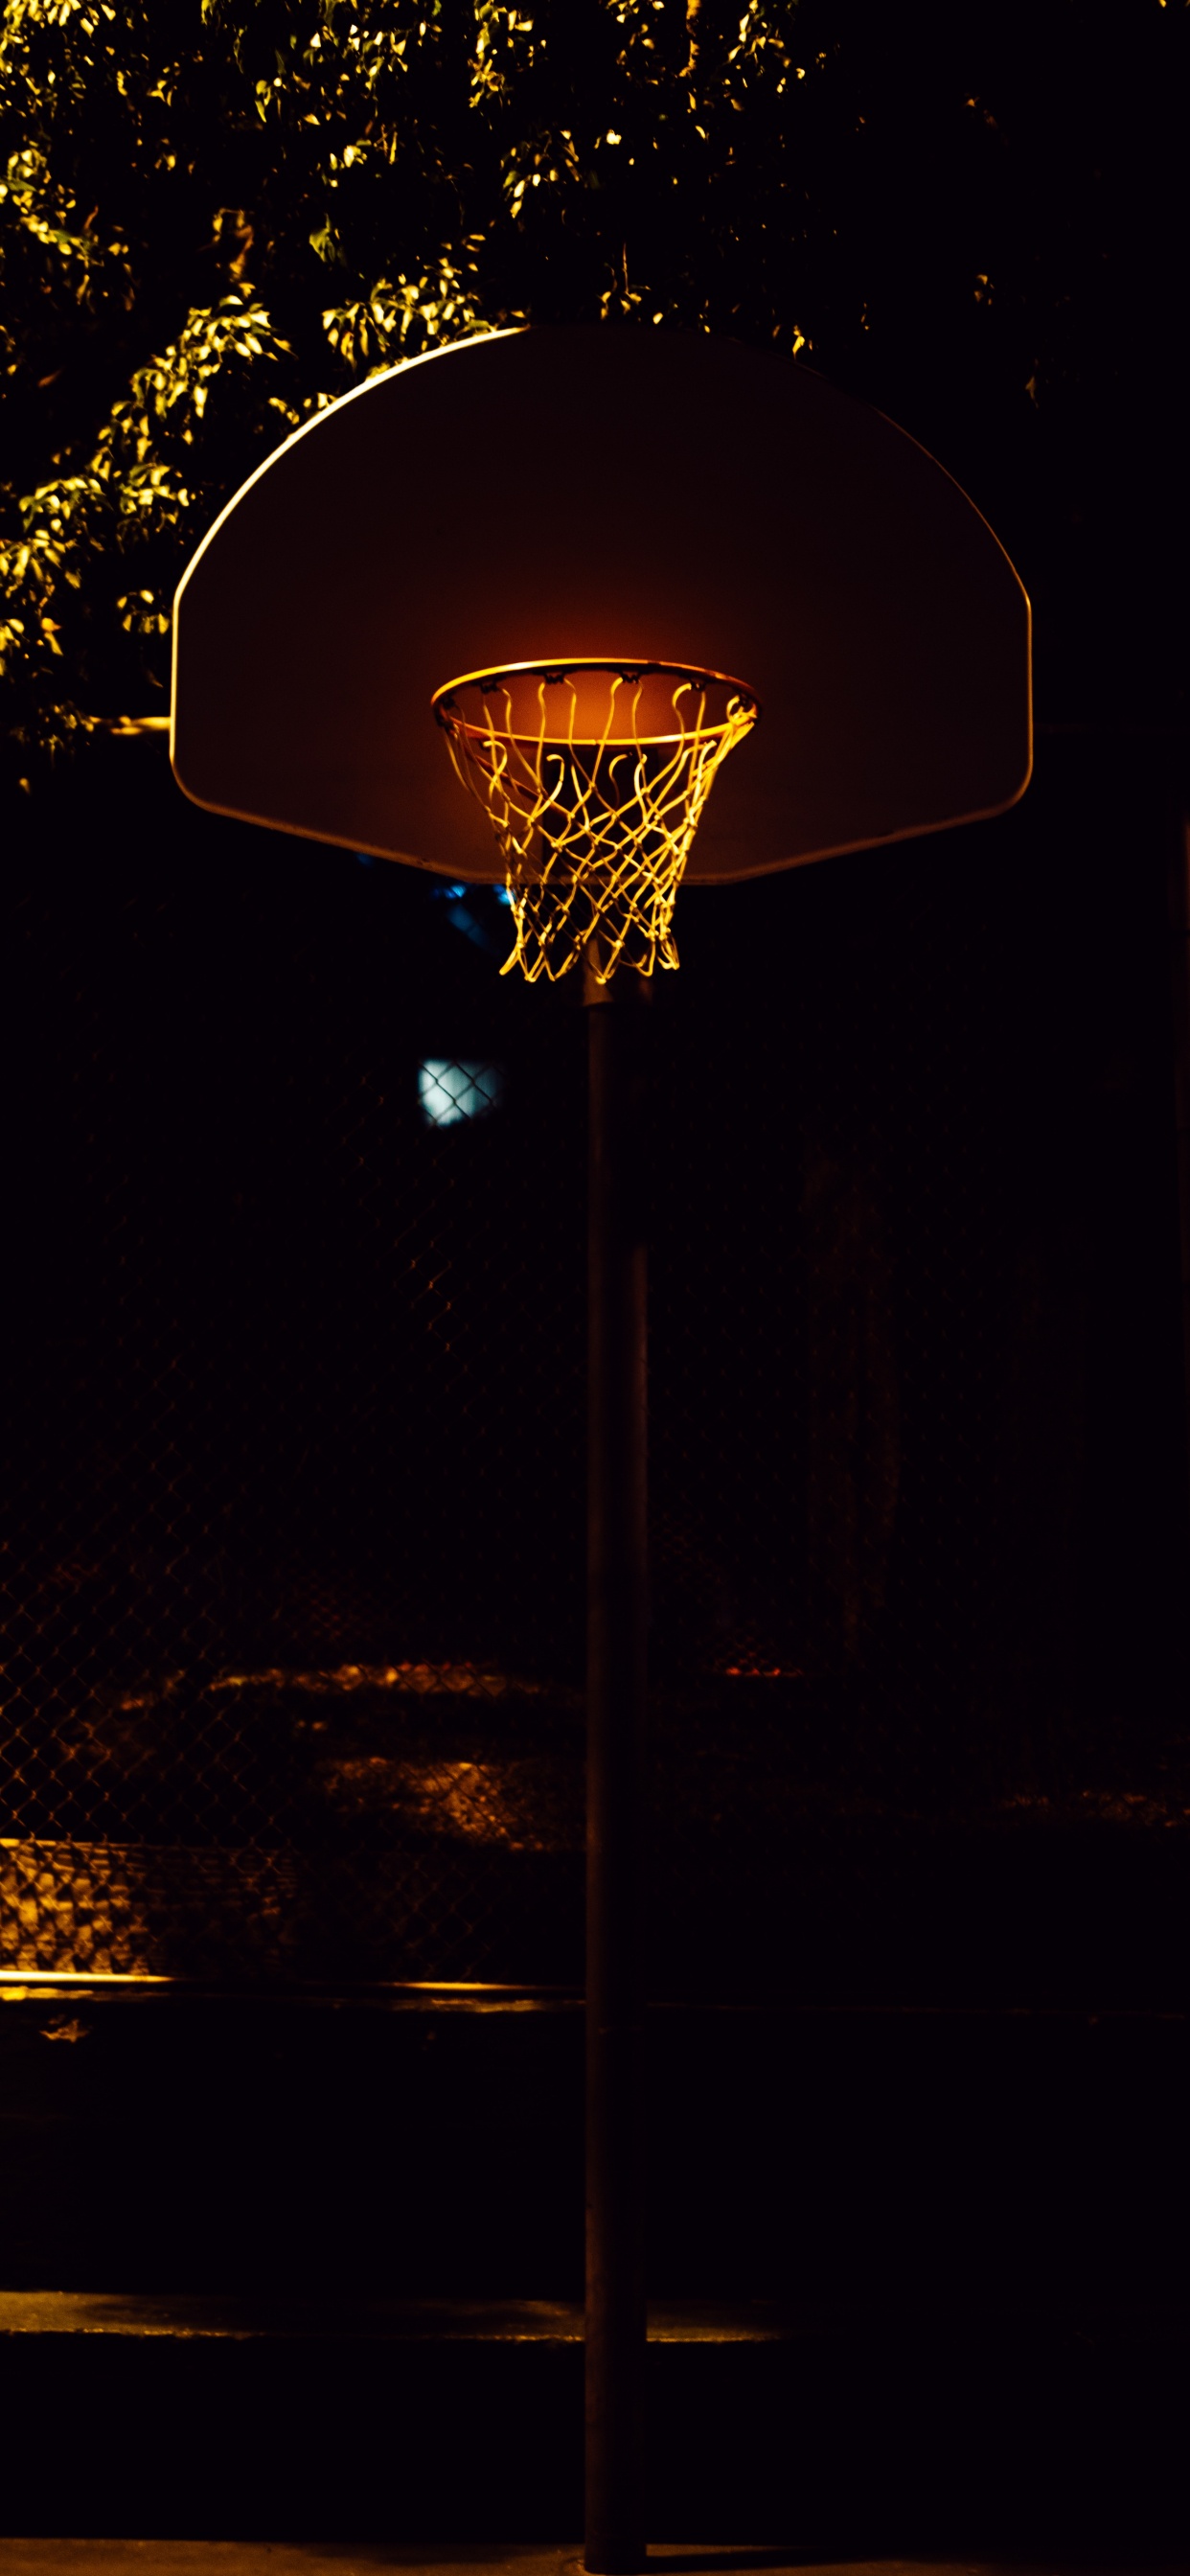 Panier de Basket Avec Lumière Allumée Pendant la Nuit. Wallpaper in 1242x2688 Resolution